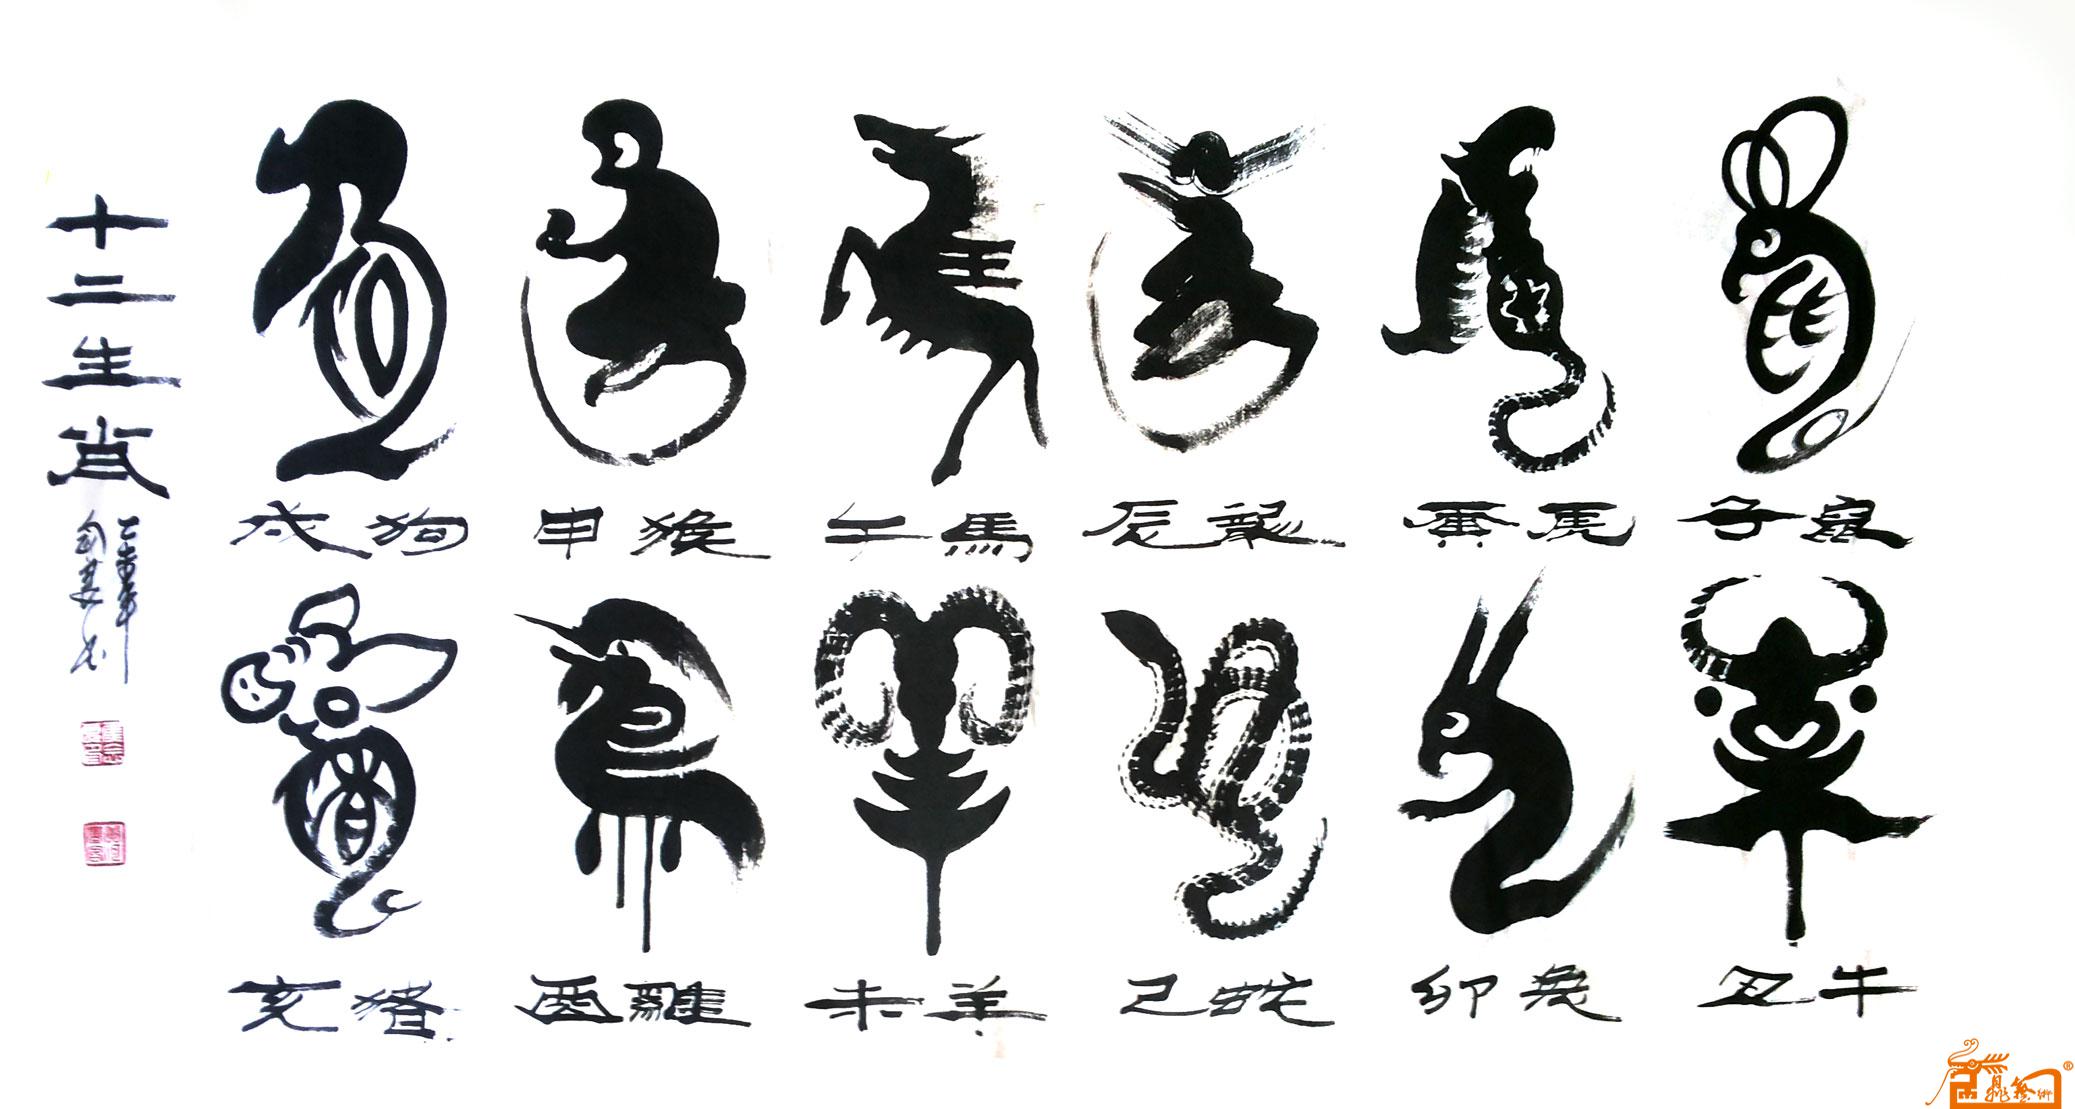 中华人们共和国著作版权作品《十二生肖》2015年